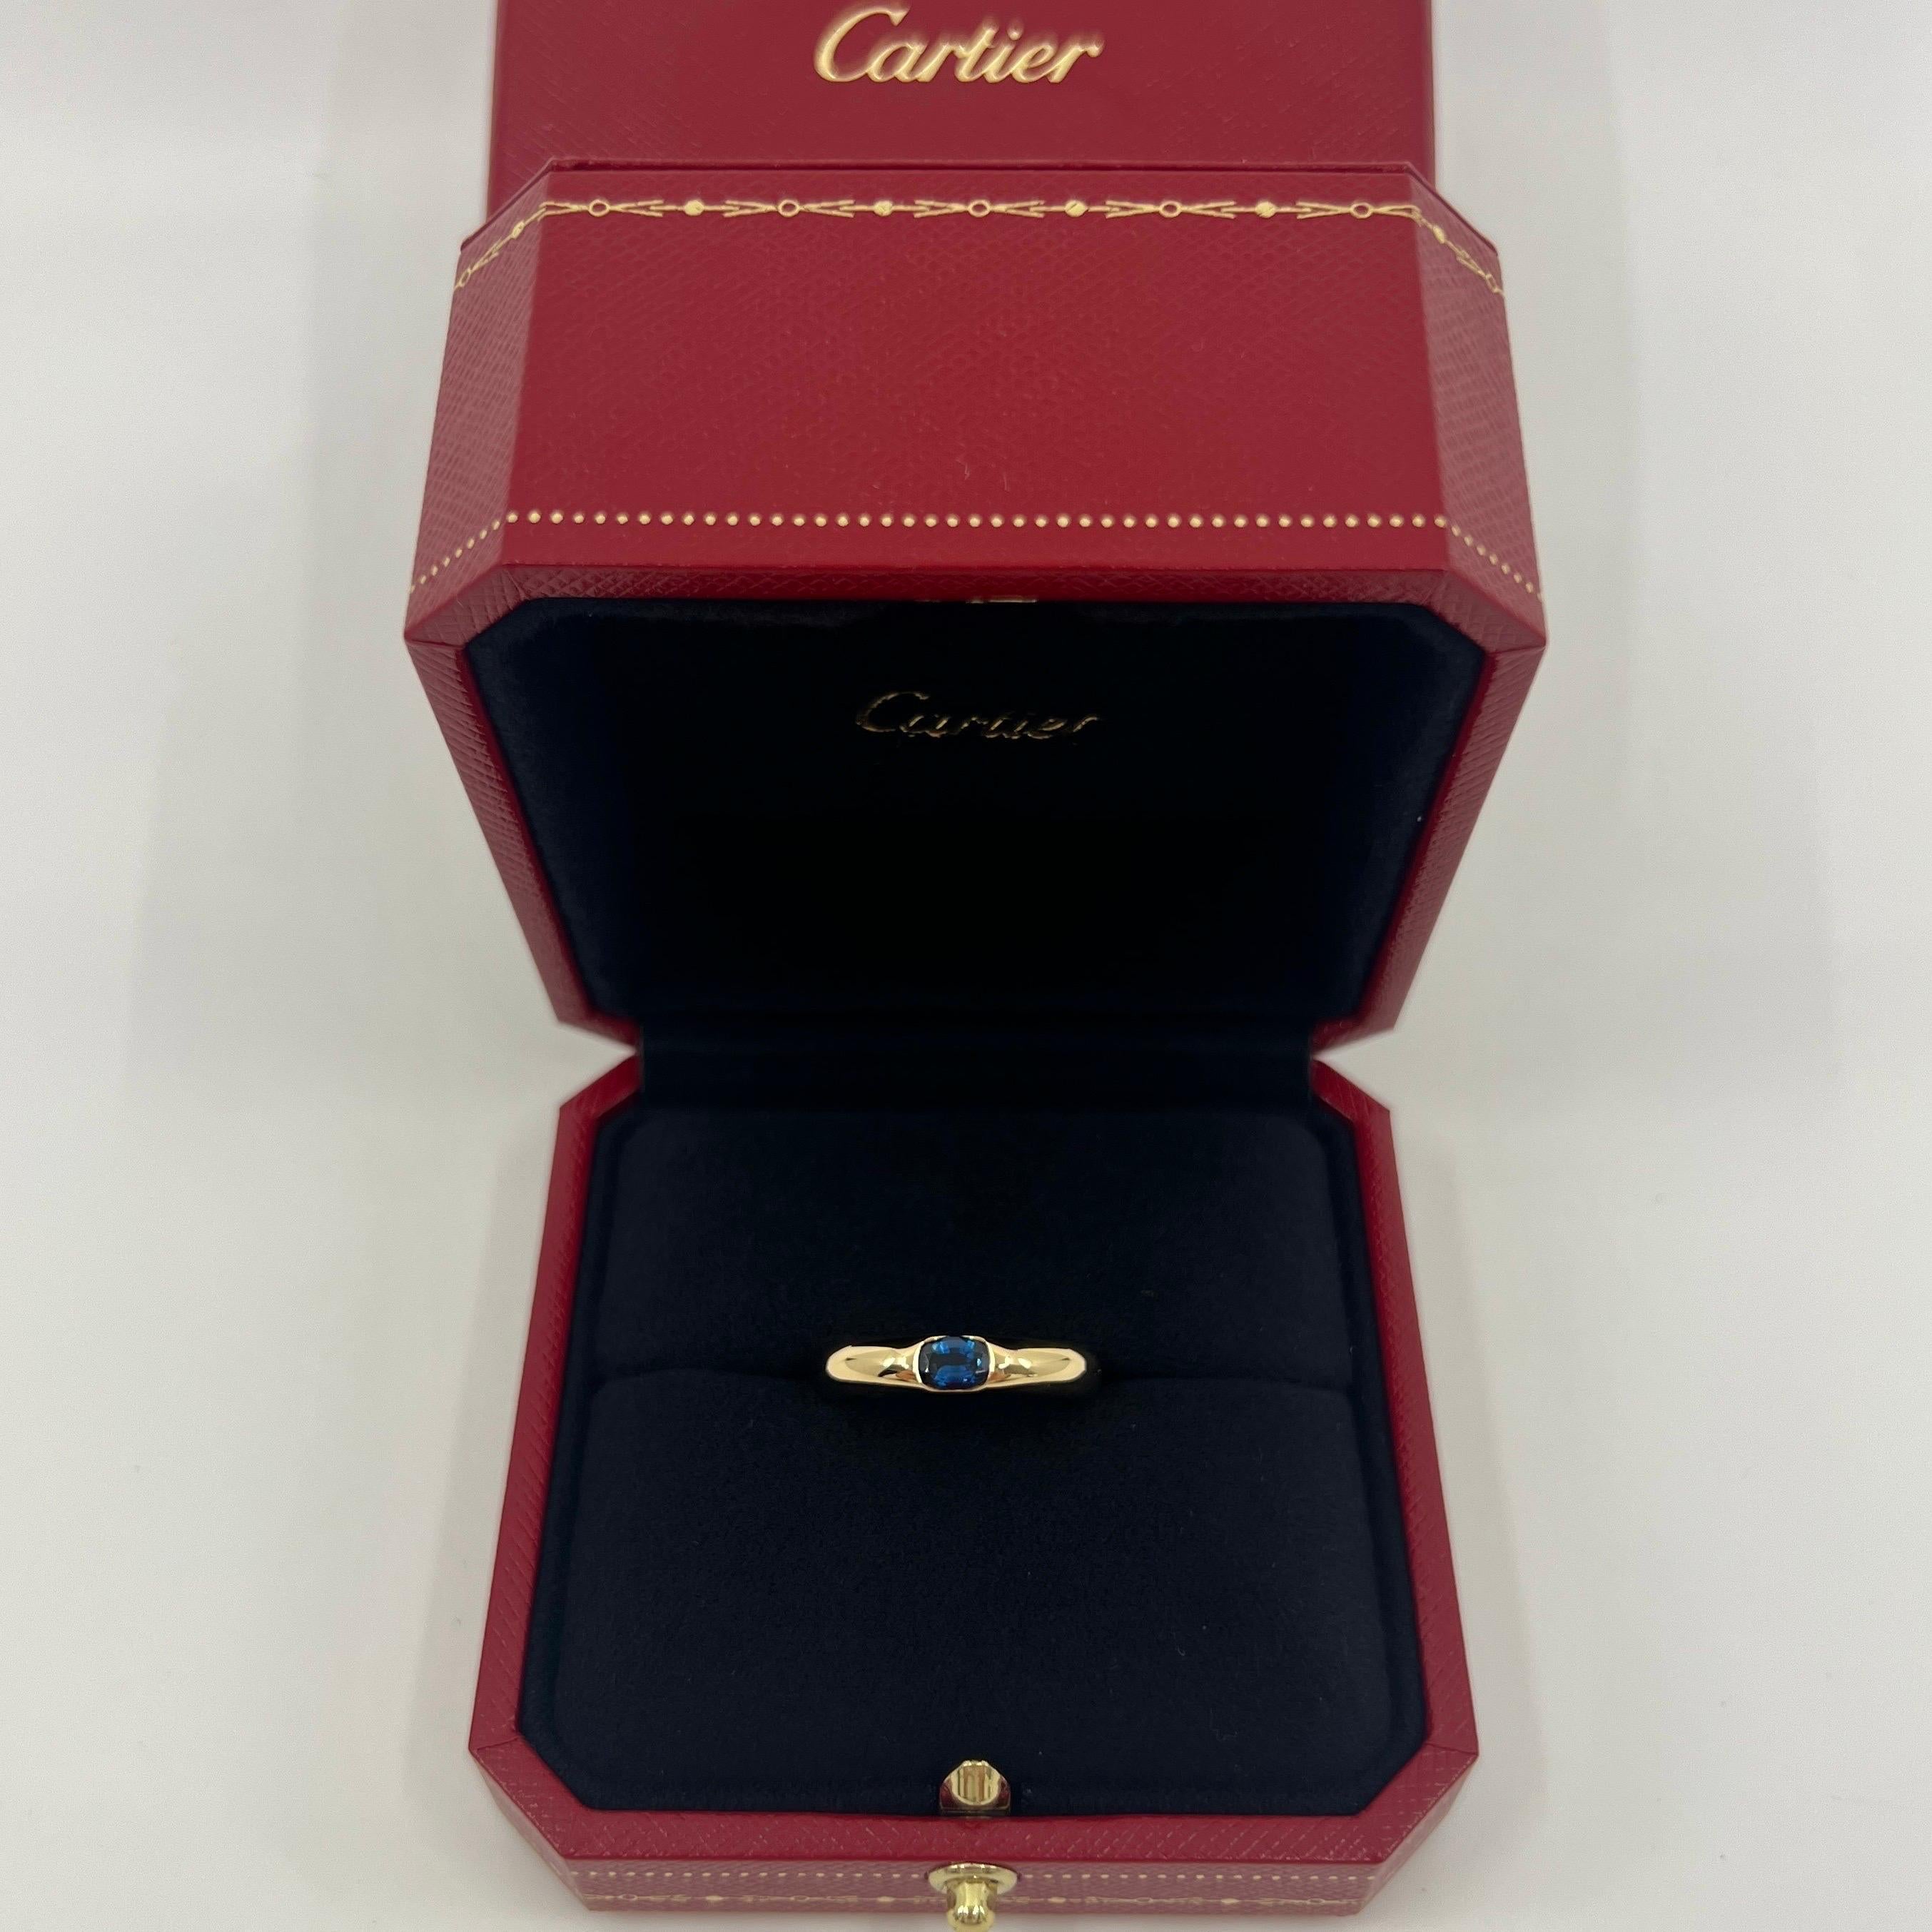 Vintage Cartier Vivid Blue Sapphire 18k Gelbgold Solitär Ring.

Atemberaubender Ring aus Gelbgold, besetzt mit einem feinen, lebhaften blauen Saphir. Edle Schmuckhäuser wie Cartier verwenden nur die feinsten Edelsteine, und dieser Saphir ist keine